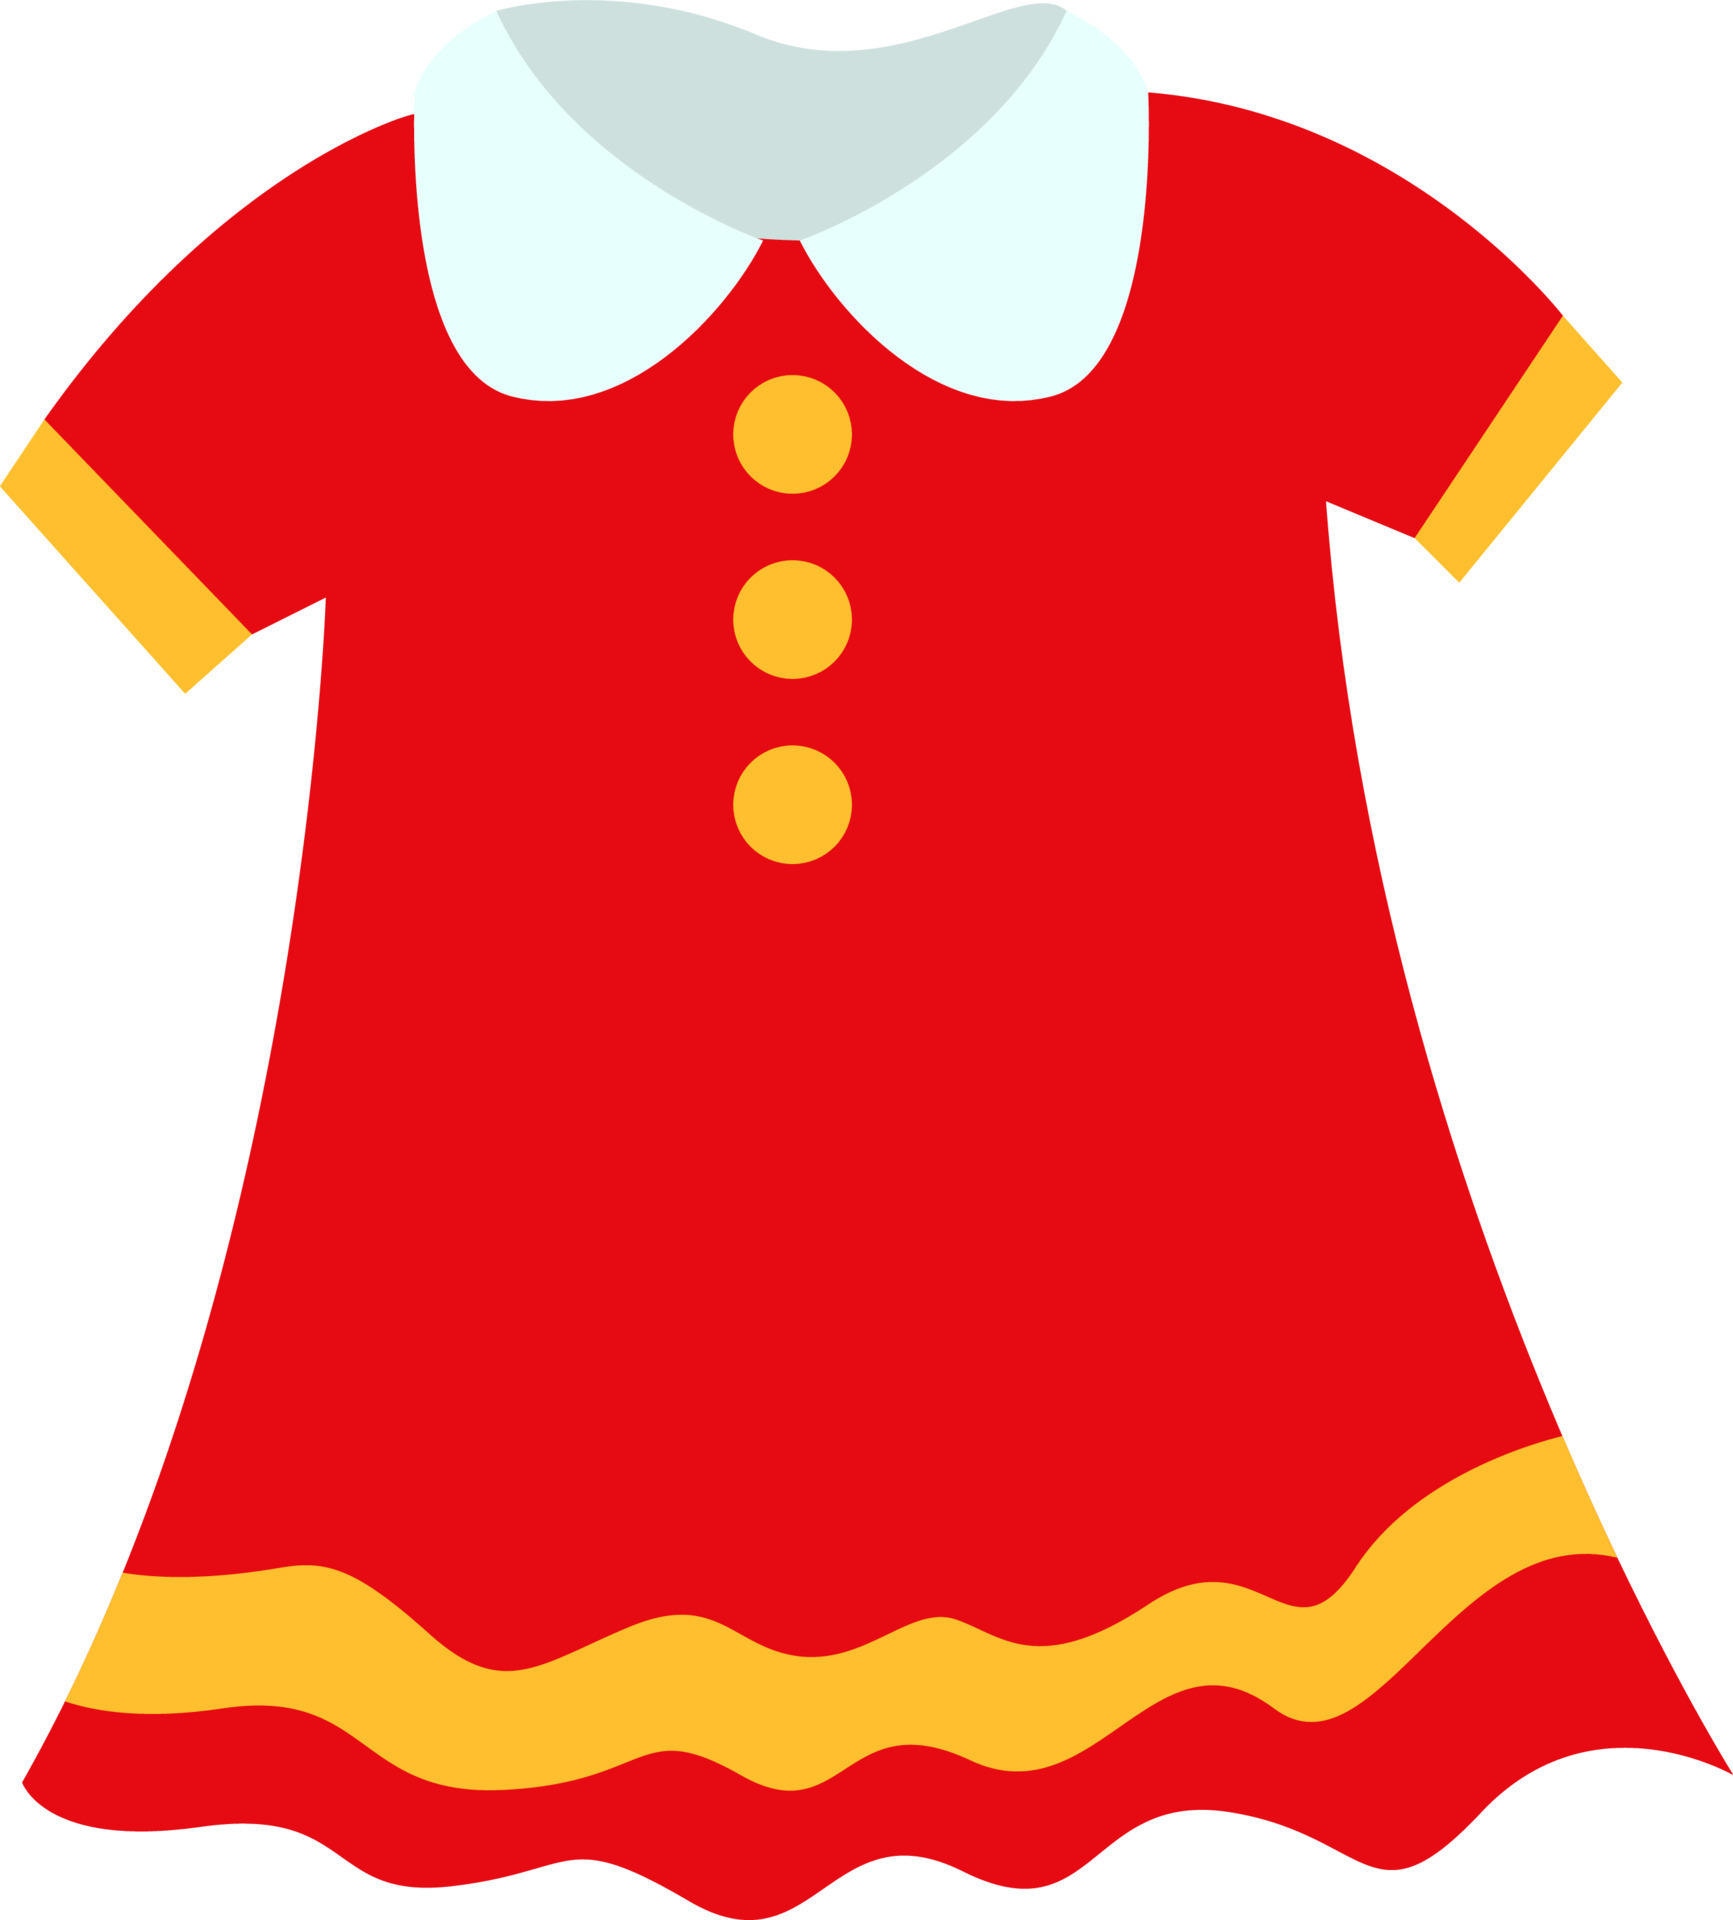 Child dress, illustration, vector on white background. 13846881 Vector ...